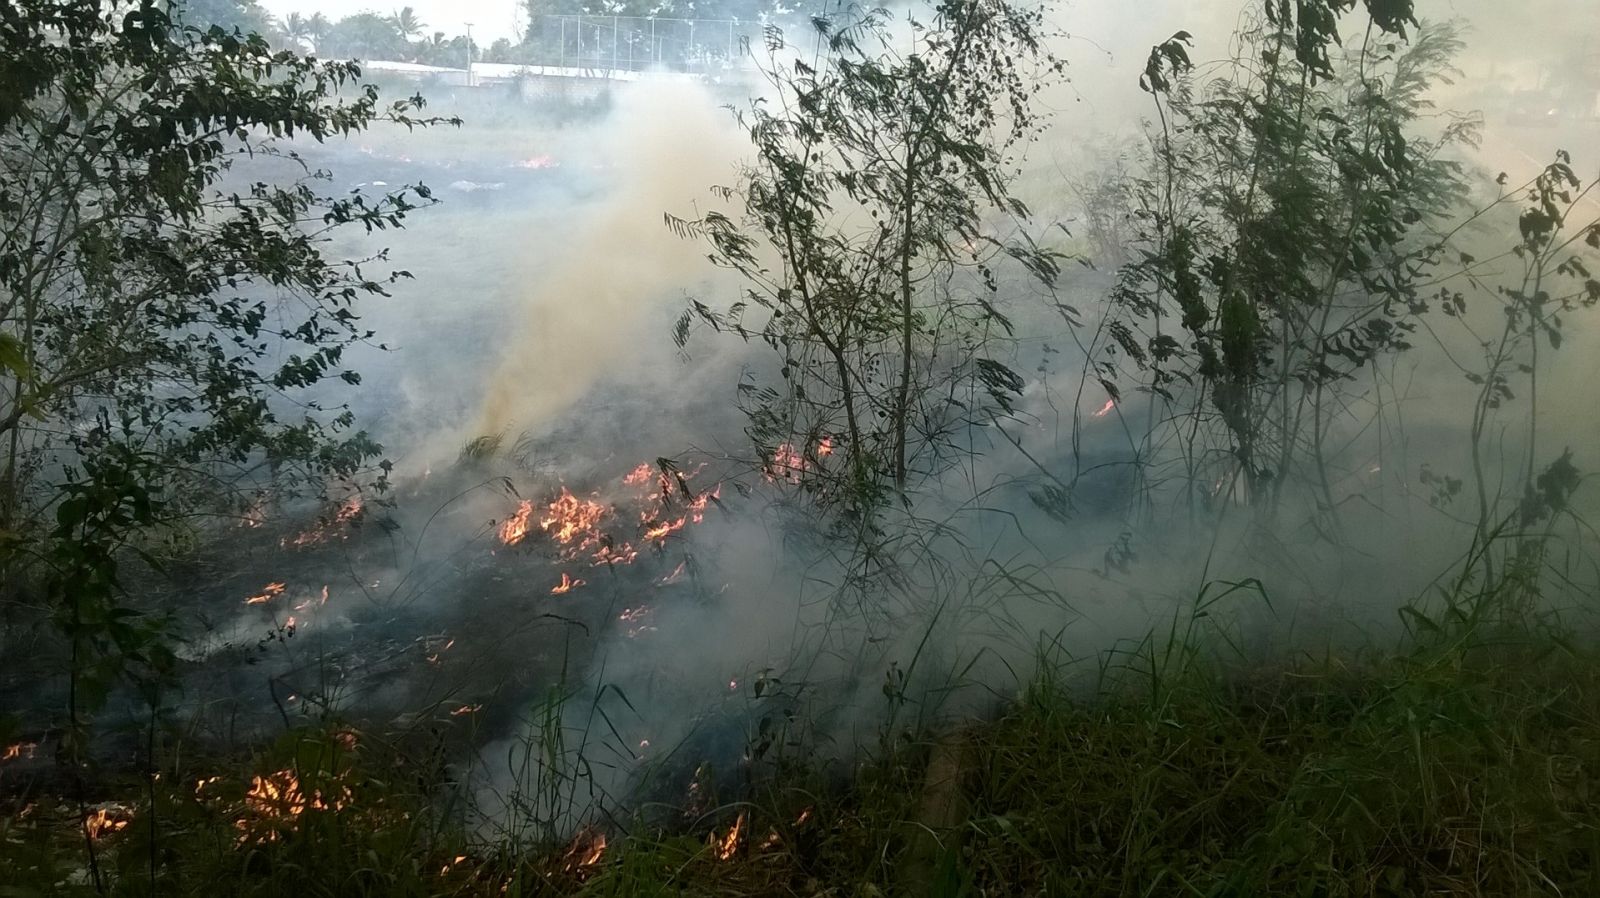 Fuligens de queimadas nas proximidades de Eunápolis estão infernizando a vida da população, donas de casa reclamam 6